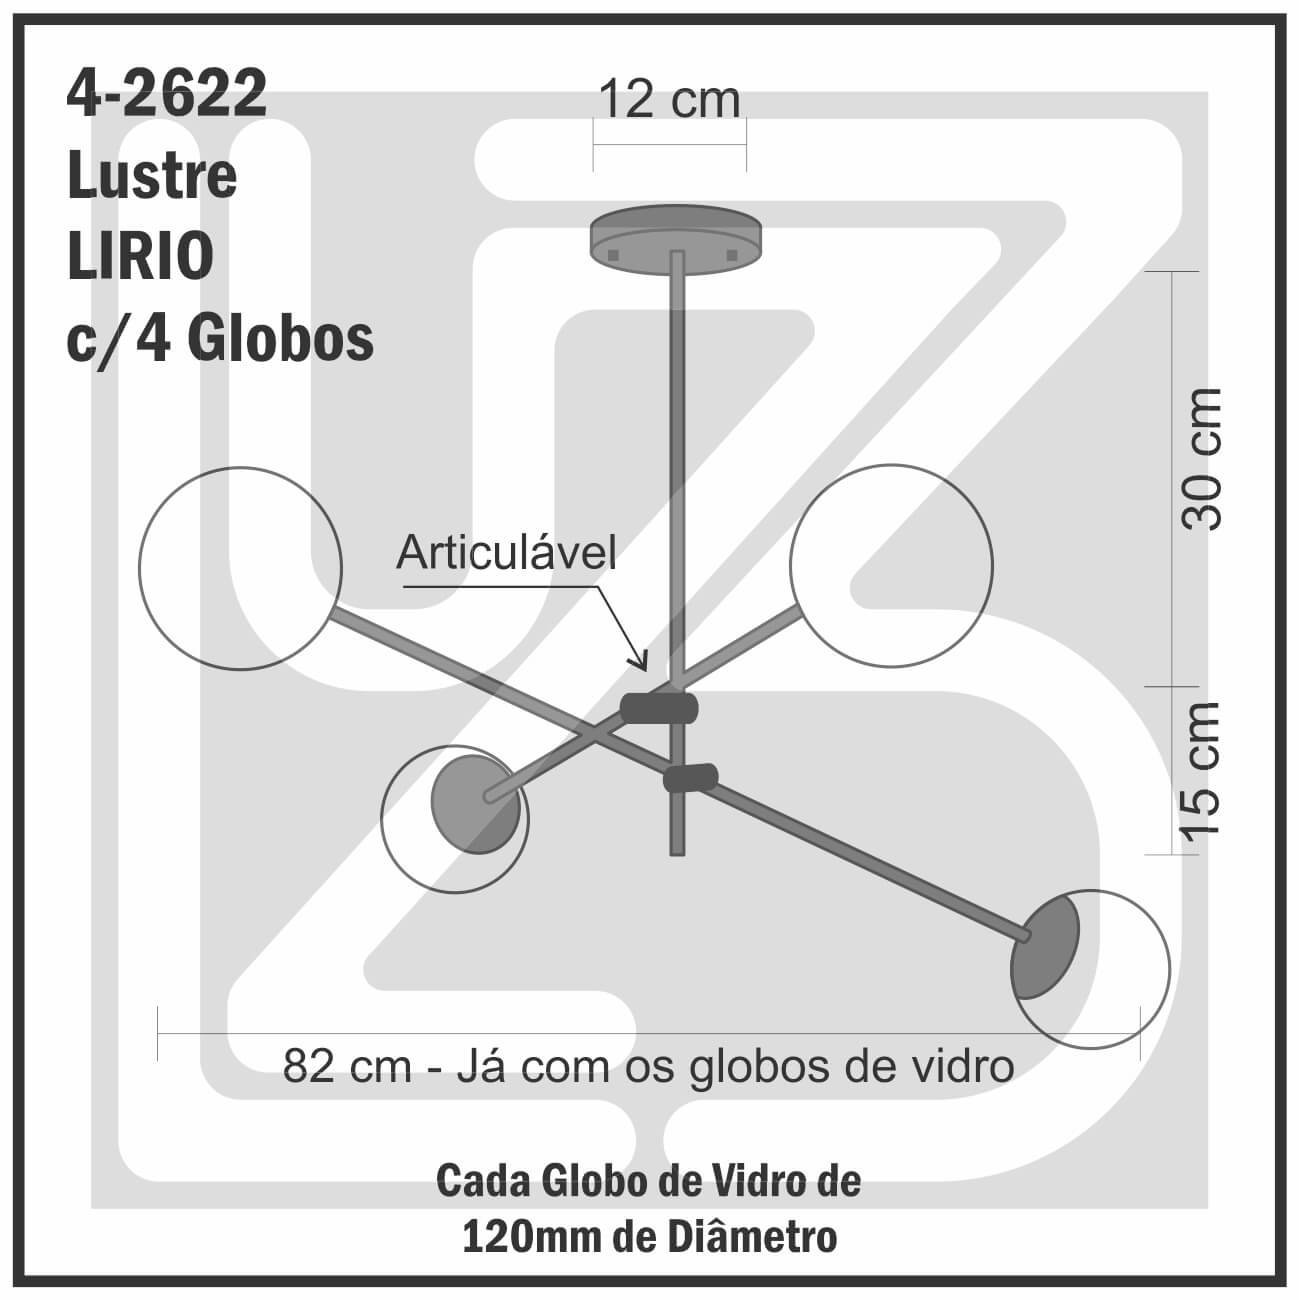 Lustre Lirio com 4 Globos Esfera de Vidro Branco - OURO - 4-2622-14-BR - 4